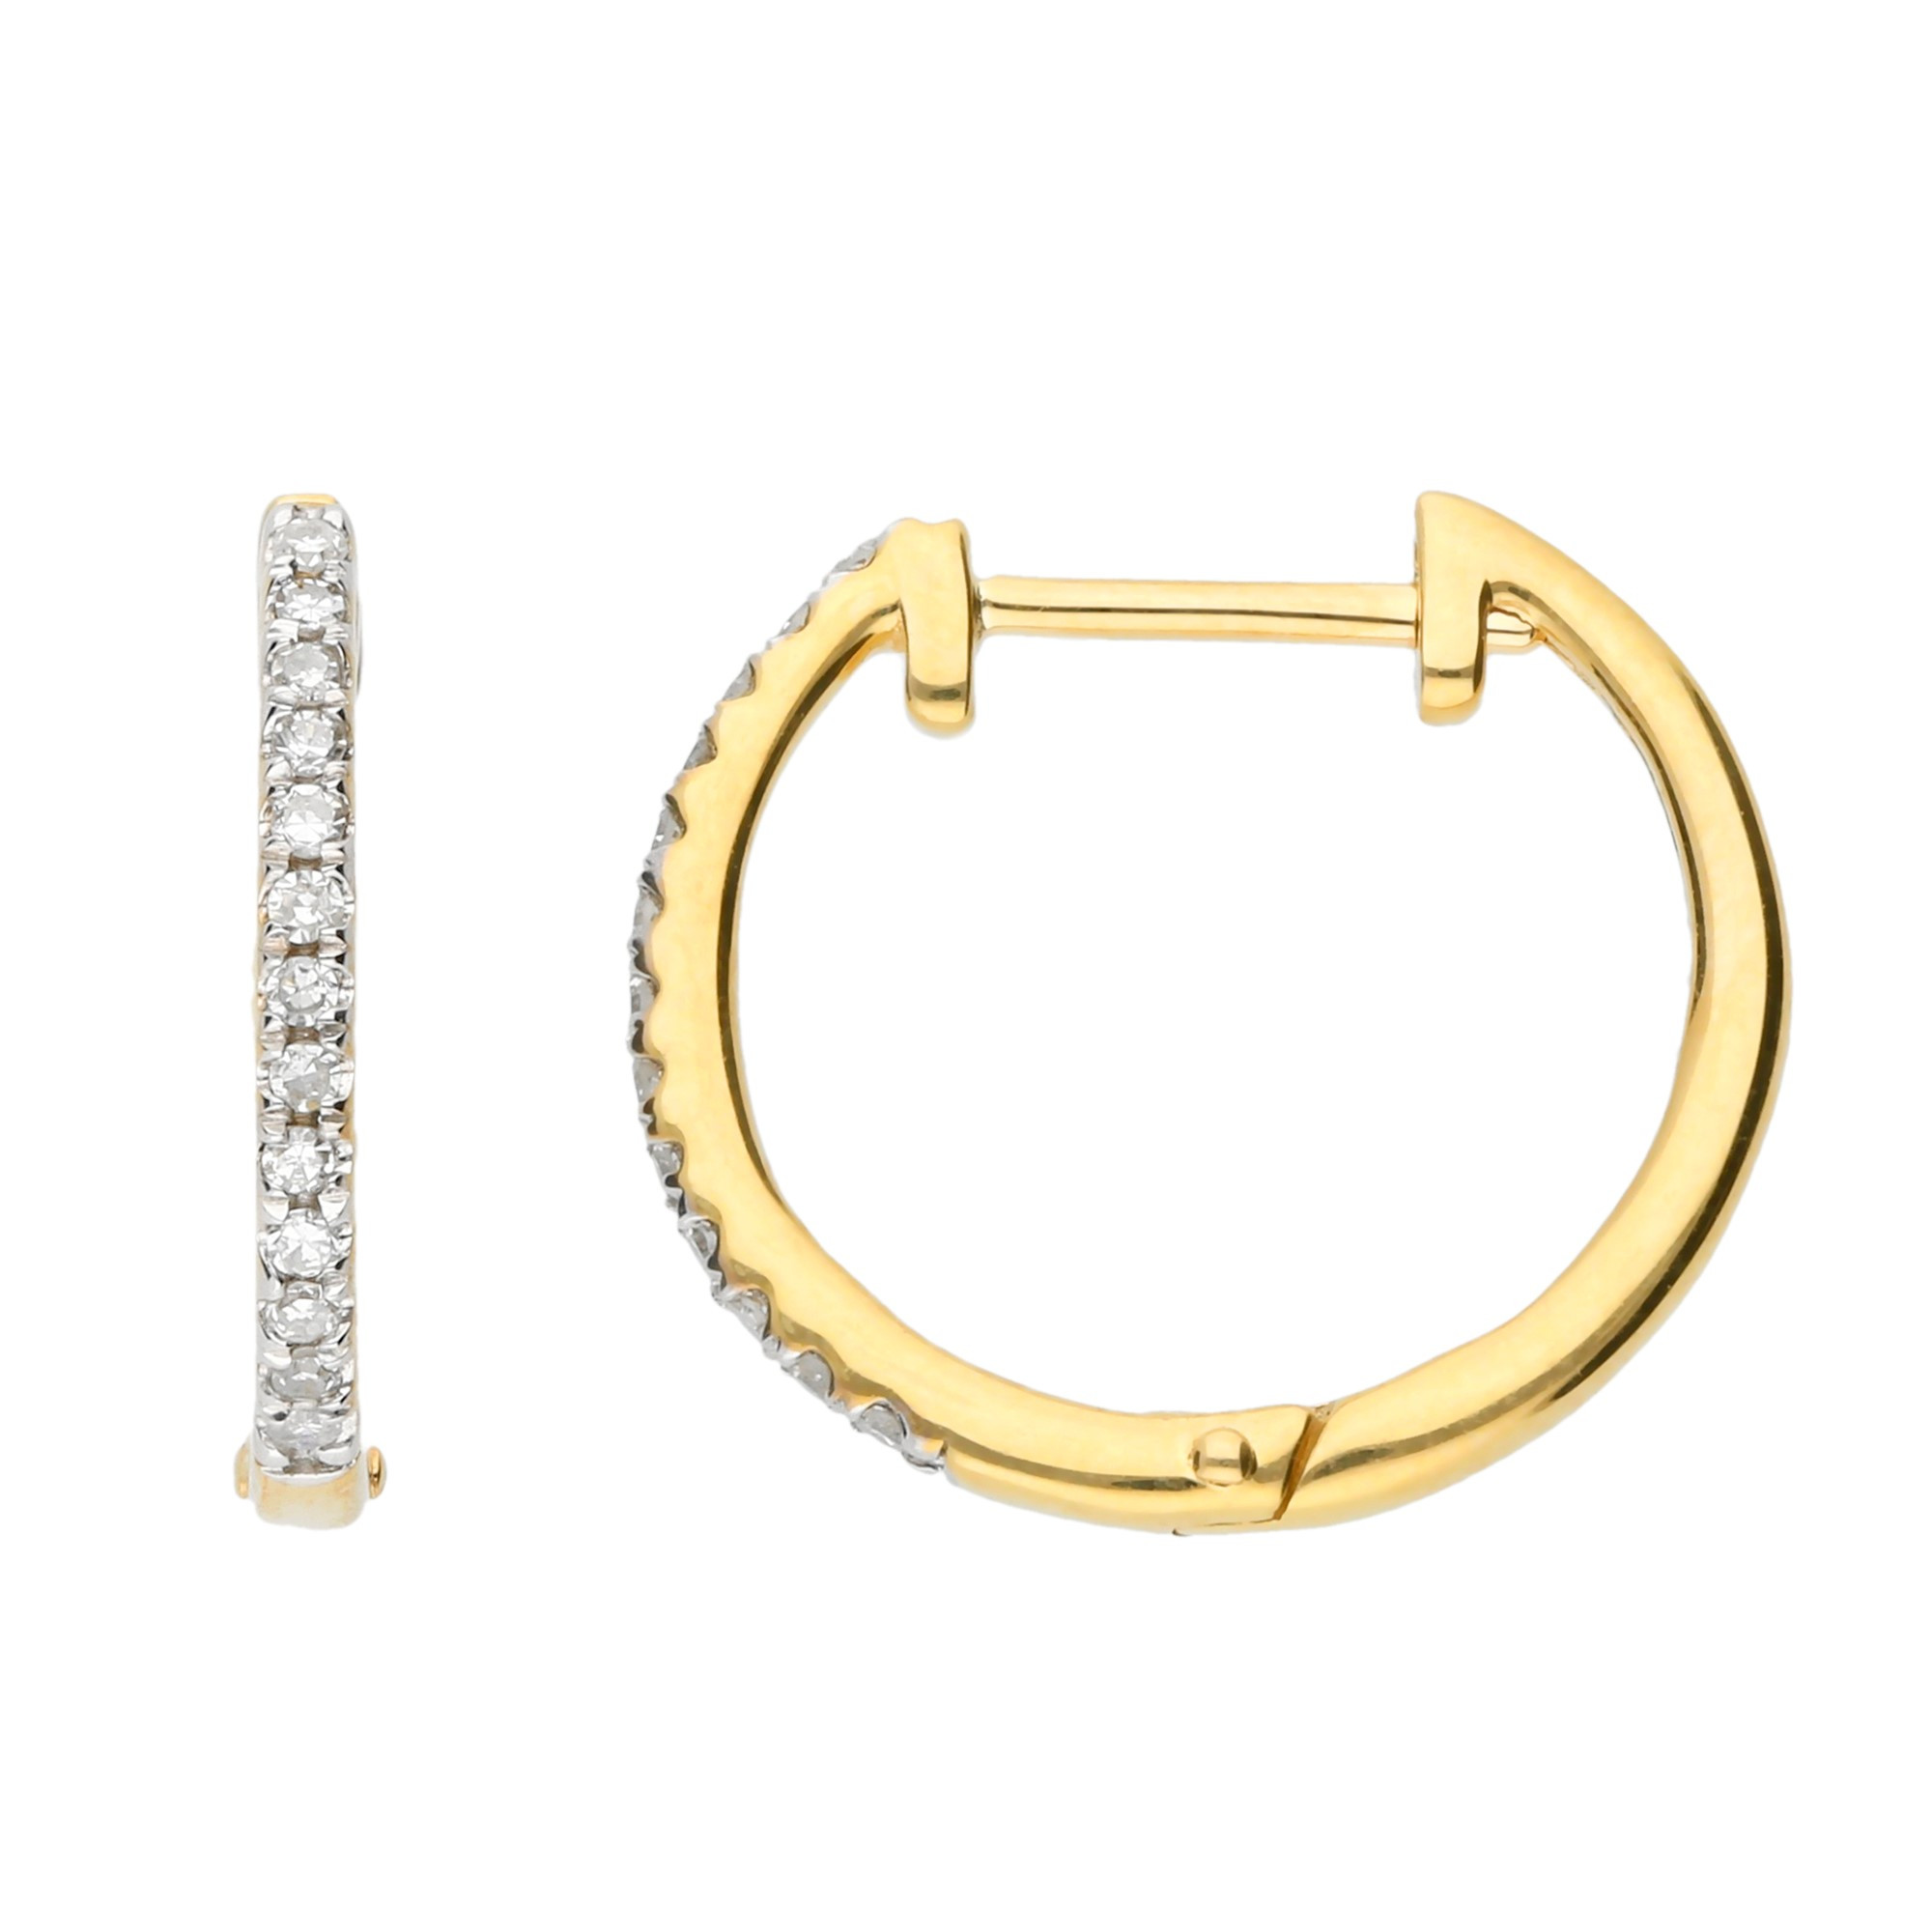 Diamond Huggie Hoop Jewellery Earrings Hoop Earrings 11-13-15mm Diamond Huggie Hoop Earring 9ct Gold Diamond Hoop Diamond Cartilage Hoop 